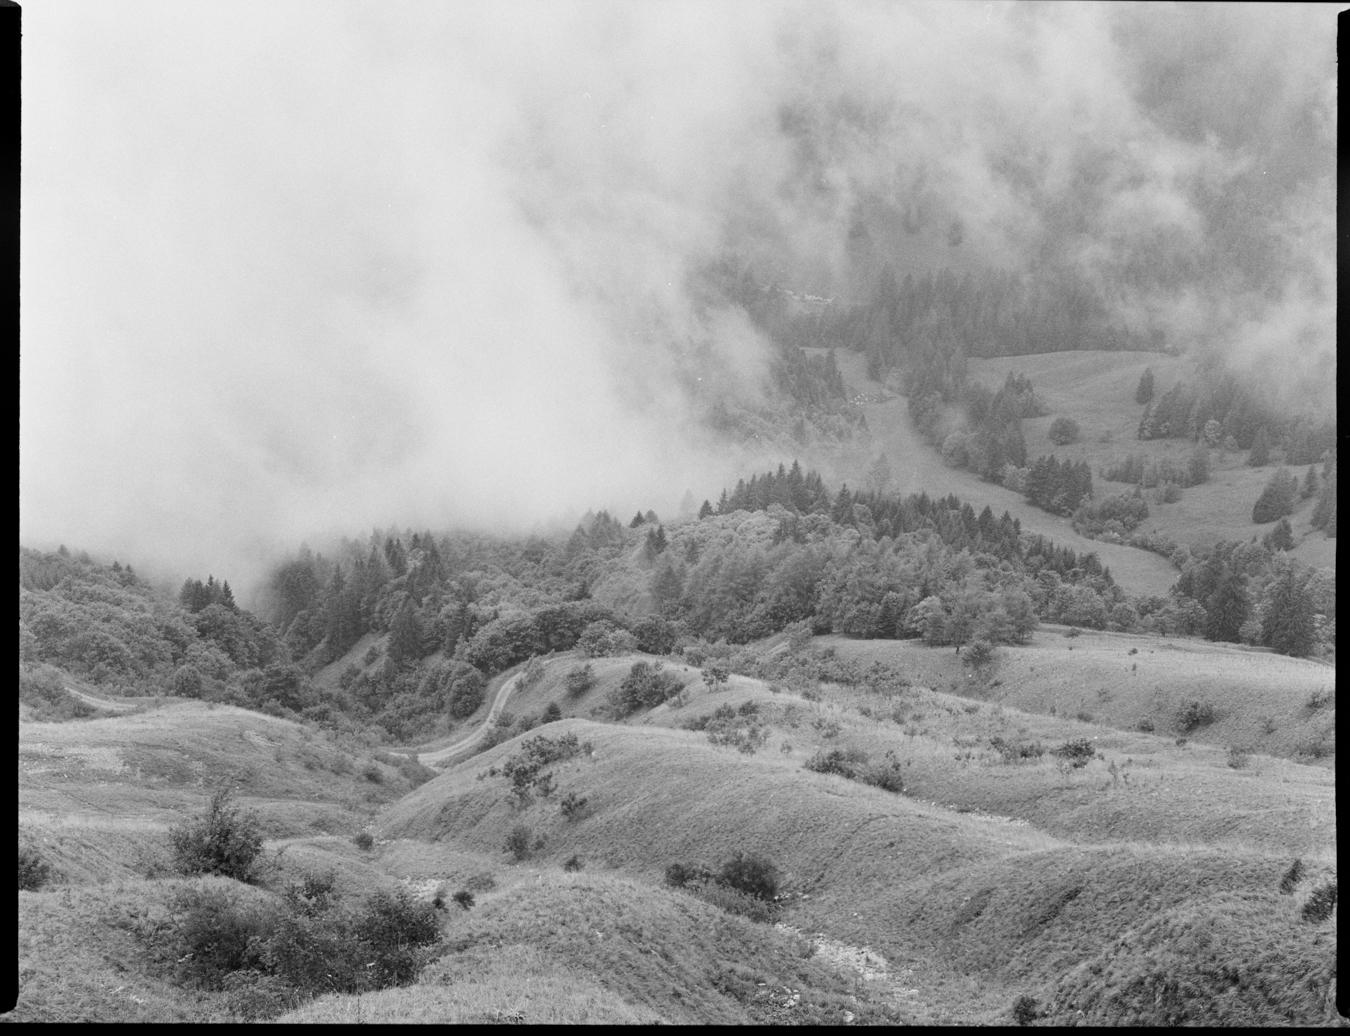 Photographie en moyen format argentique en noir et blanc de la vallée non loin de dent de Jaman en Suisse. Le brouillard rempli la moitié haute de l'image